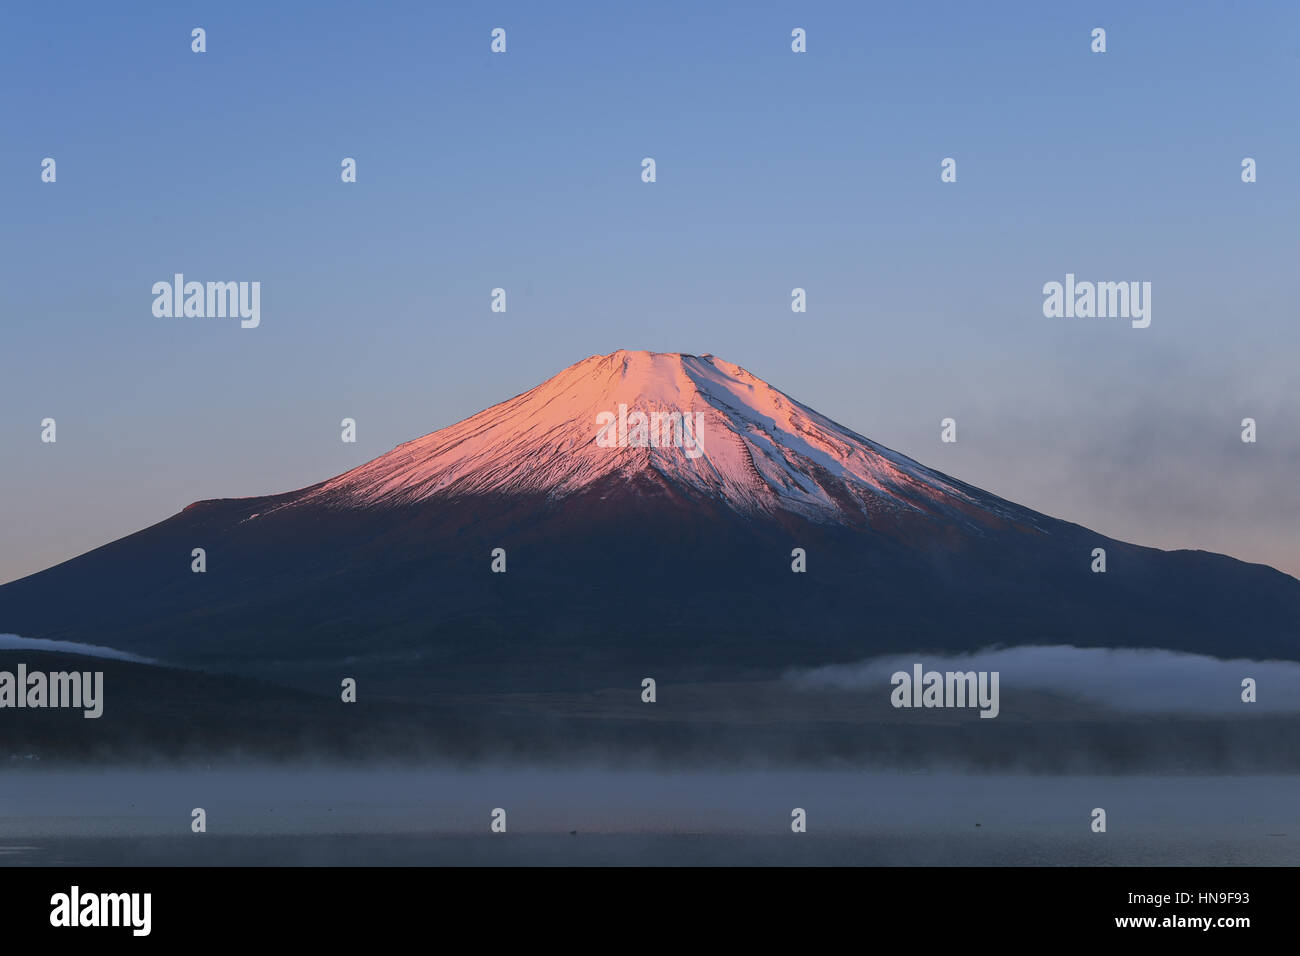 La luz de la mañana iluminando el Monte Fuji en el lago Yamanaka, prefectura de Yamanashi, Japón Foto de stock